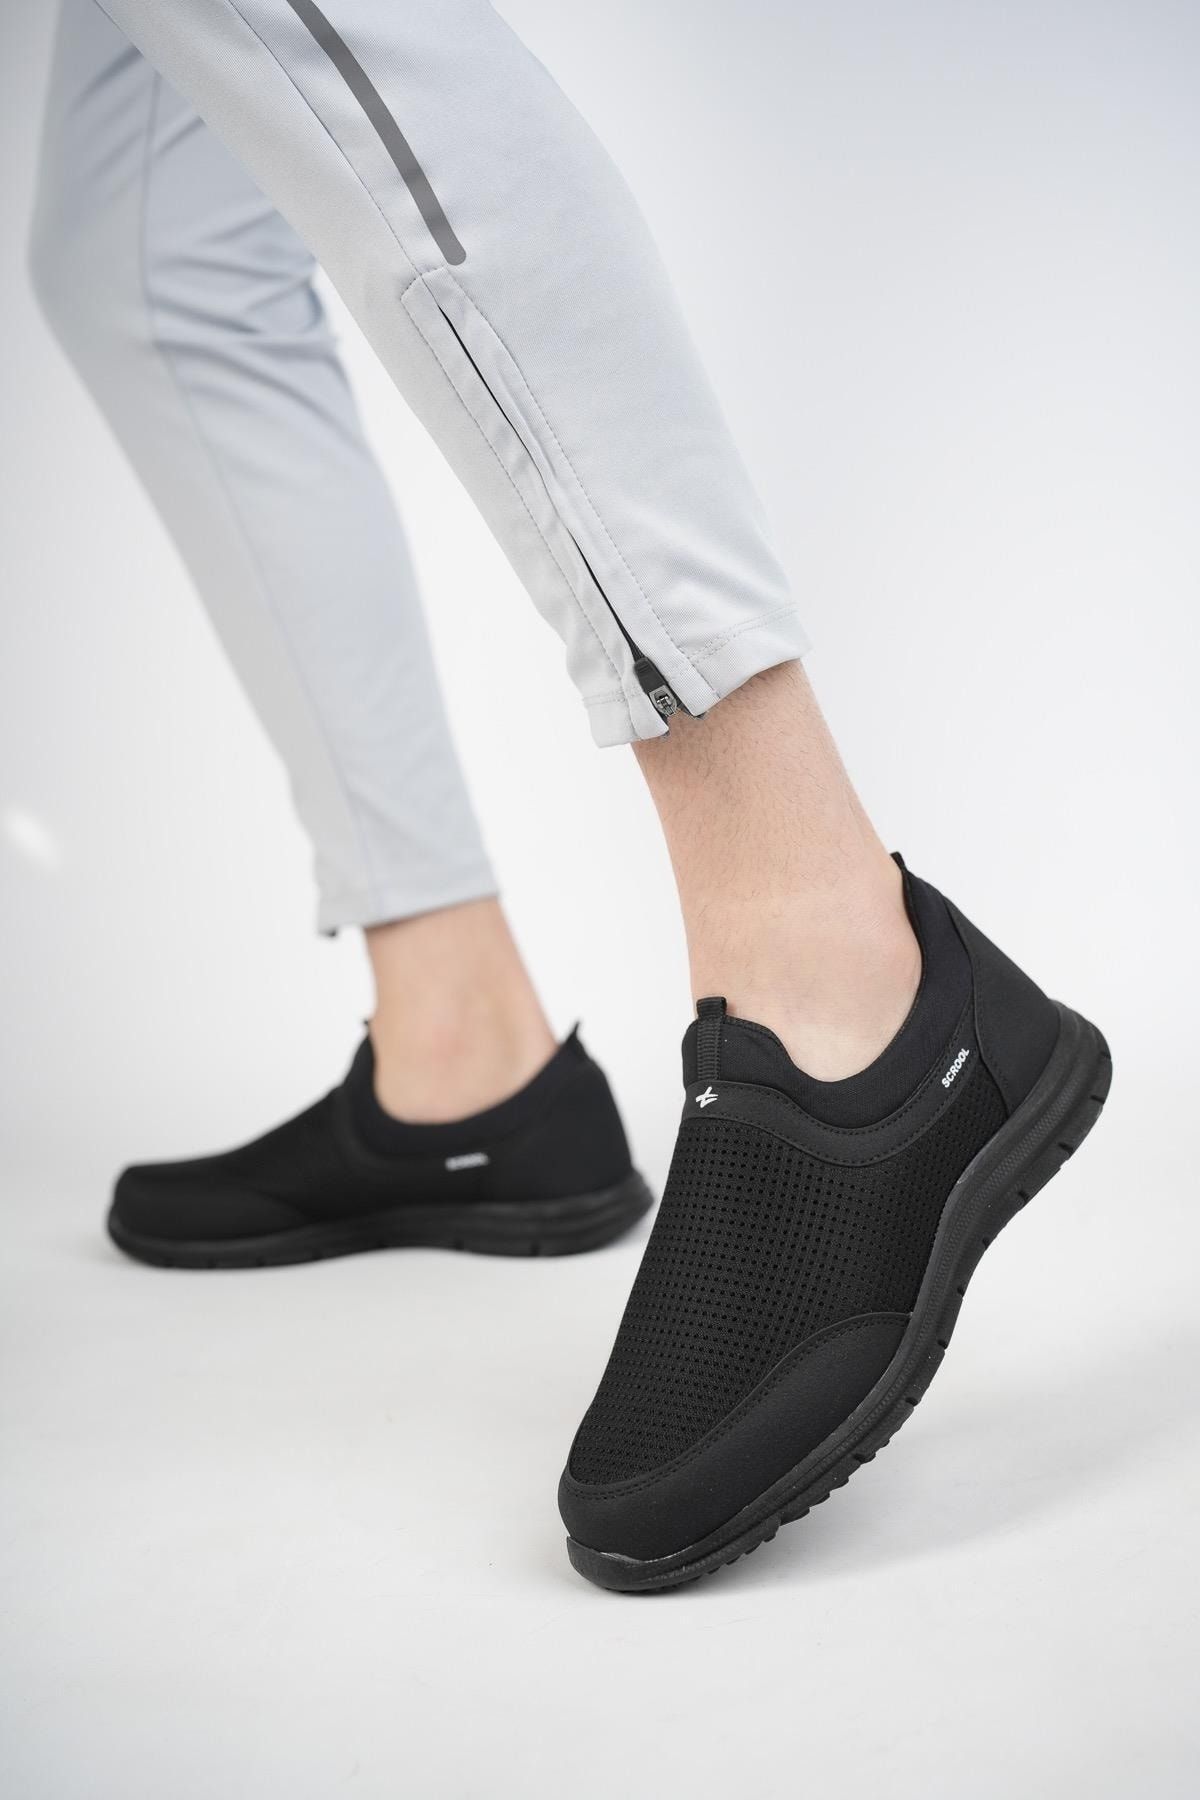 Muggo Star Garantili Unisex Ortopedik Bağcıksız Nefes Alabilen Hafif Yürüyüş Sneaker Spor Ayakkabı